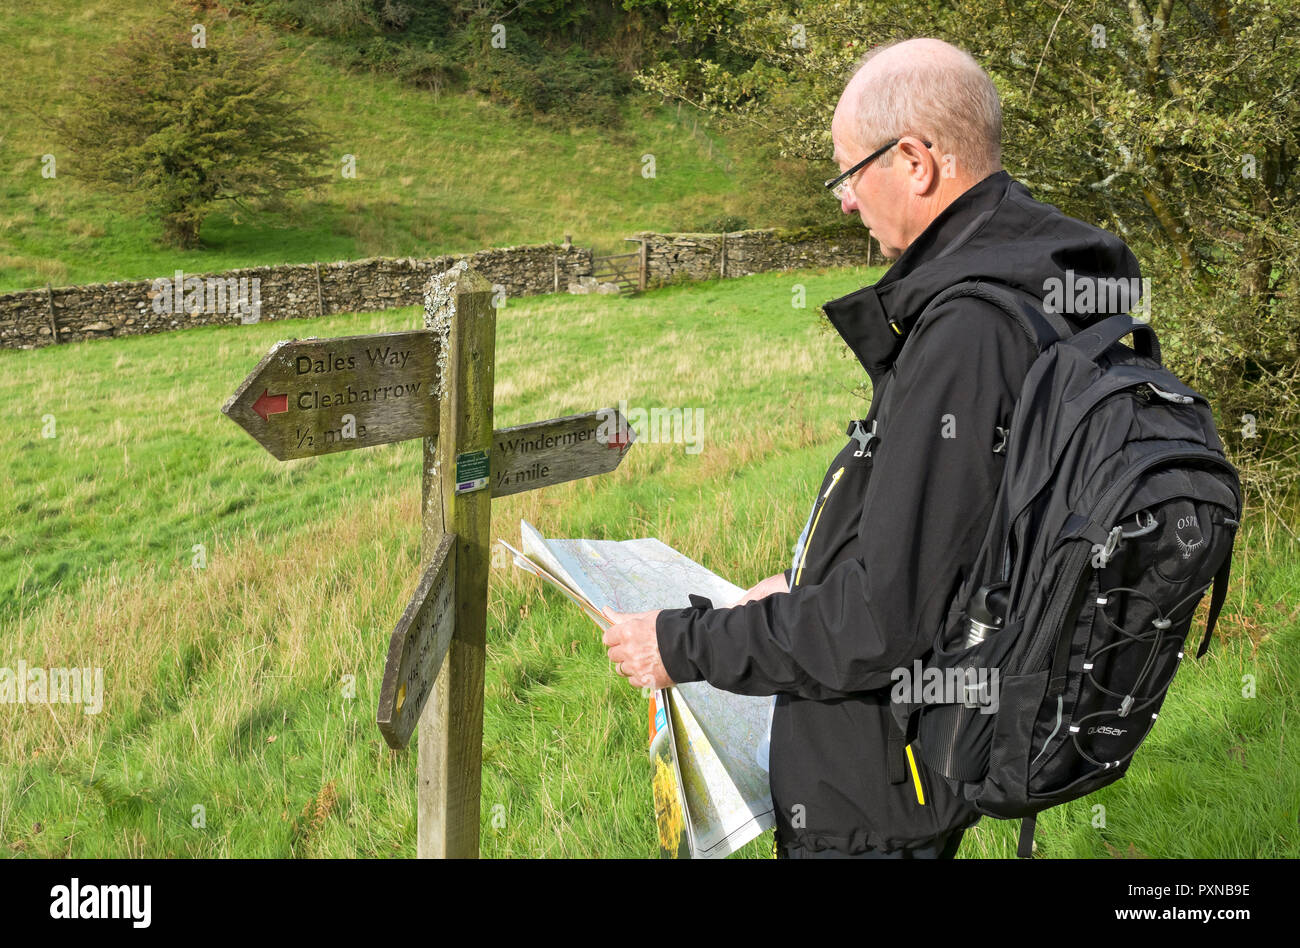 Mann Person Wanderer Blick auf eine Karte auf dem Dales Way Wanderweg Weg Spaziergang im Spätsommer in der Nähe von Windermere Cumbria England Großbritannien Großbritannien Stockfoto